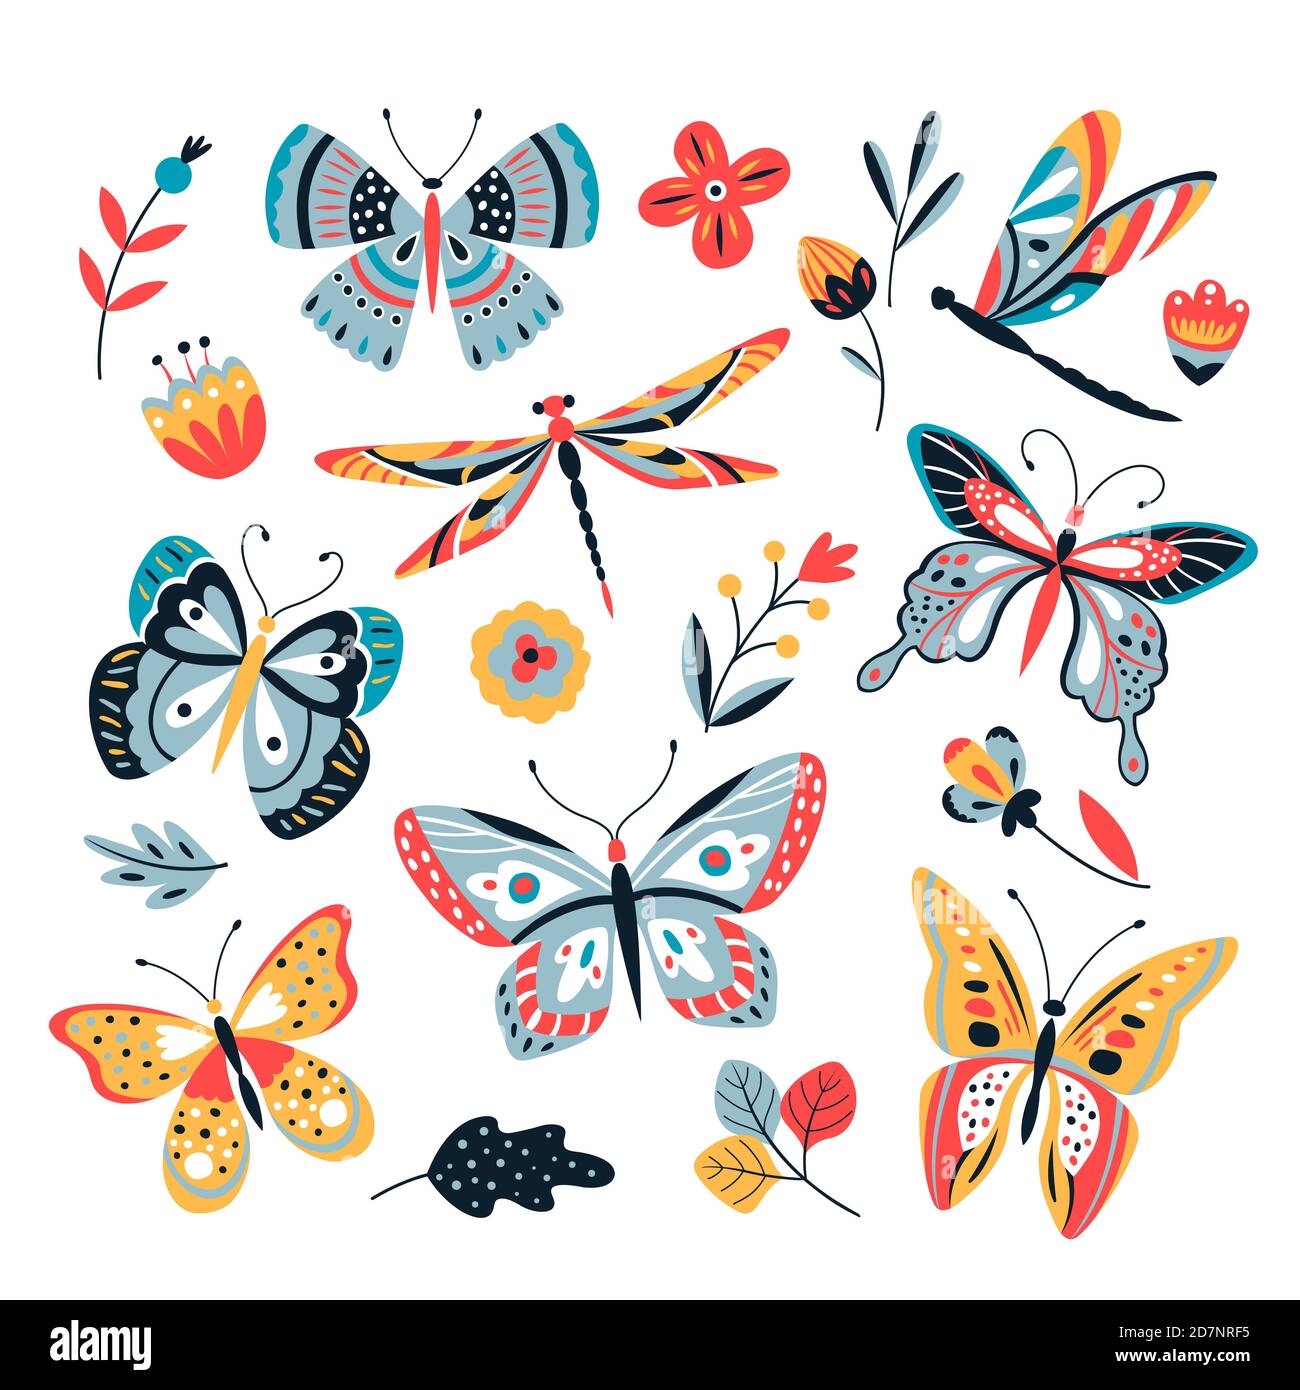 Dibujo de libelulas y mariposas fotografías e imágenes de alta resolución -  Alamy